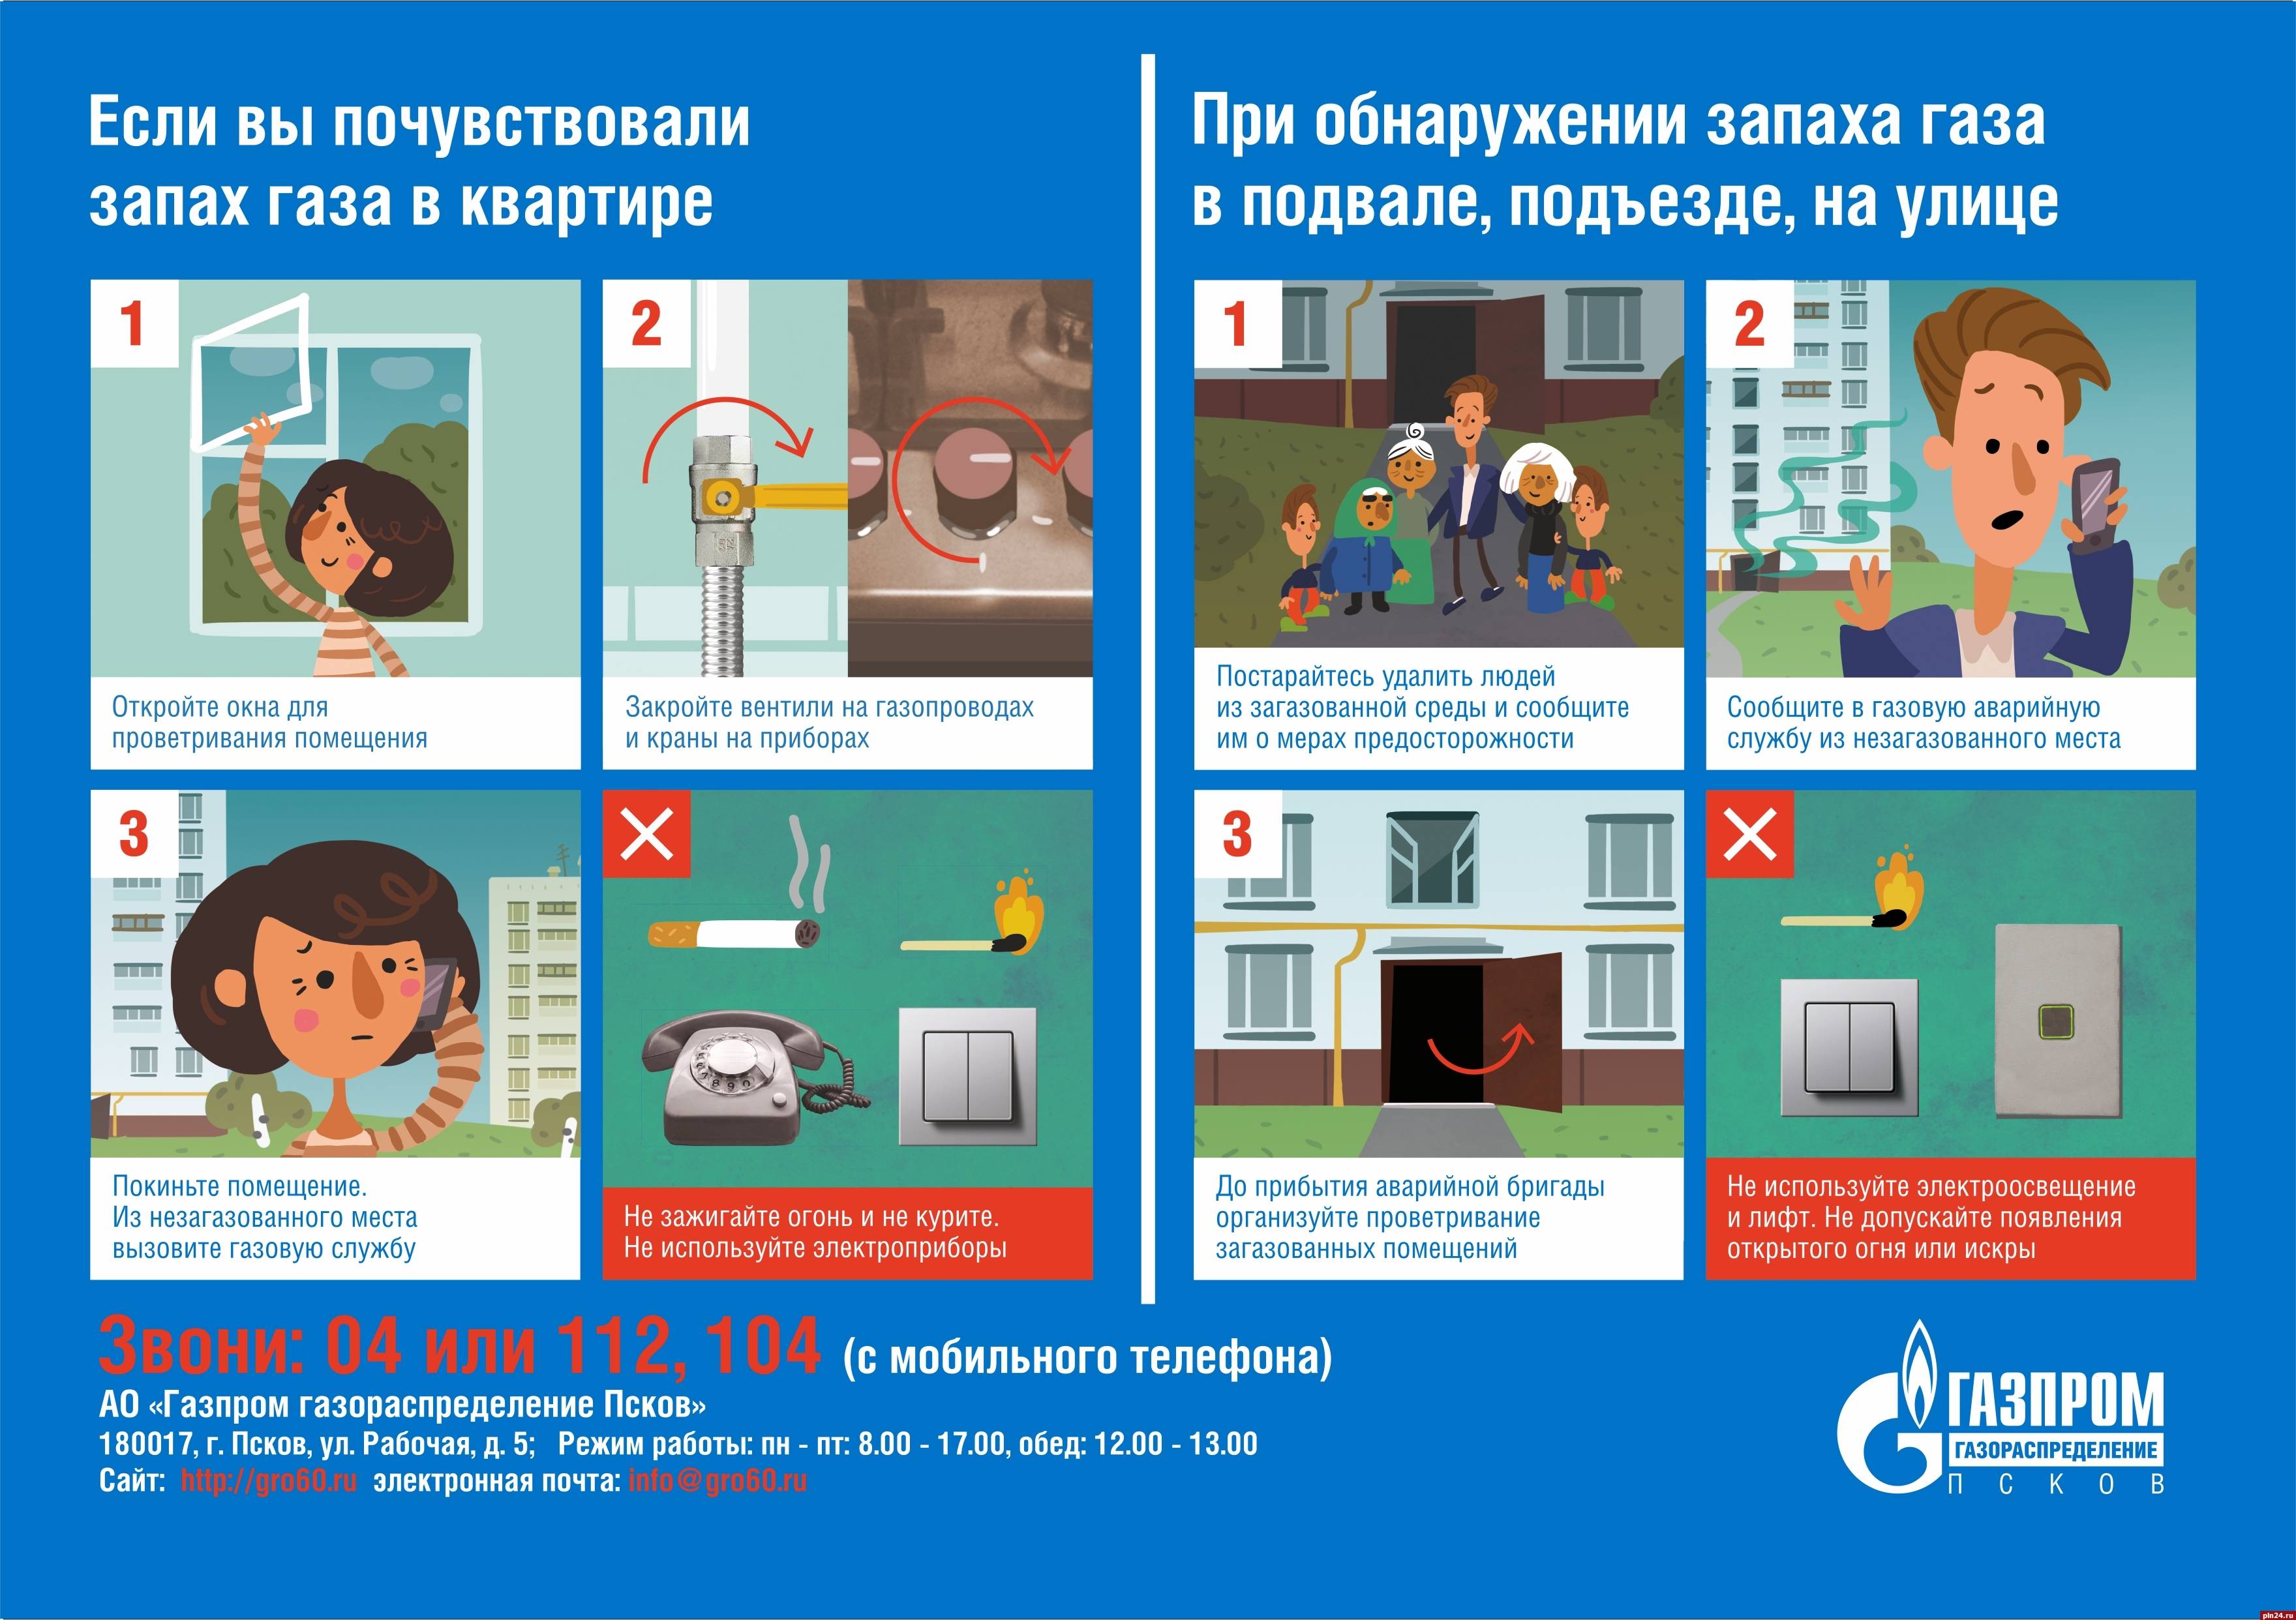 Запах канализации в подъезде: куда можно позвонить или обратиться | domosite.ru